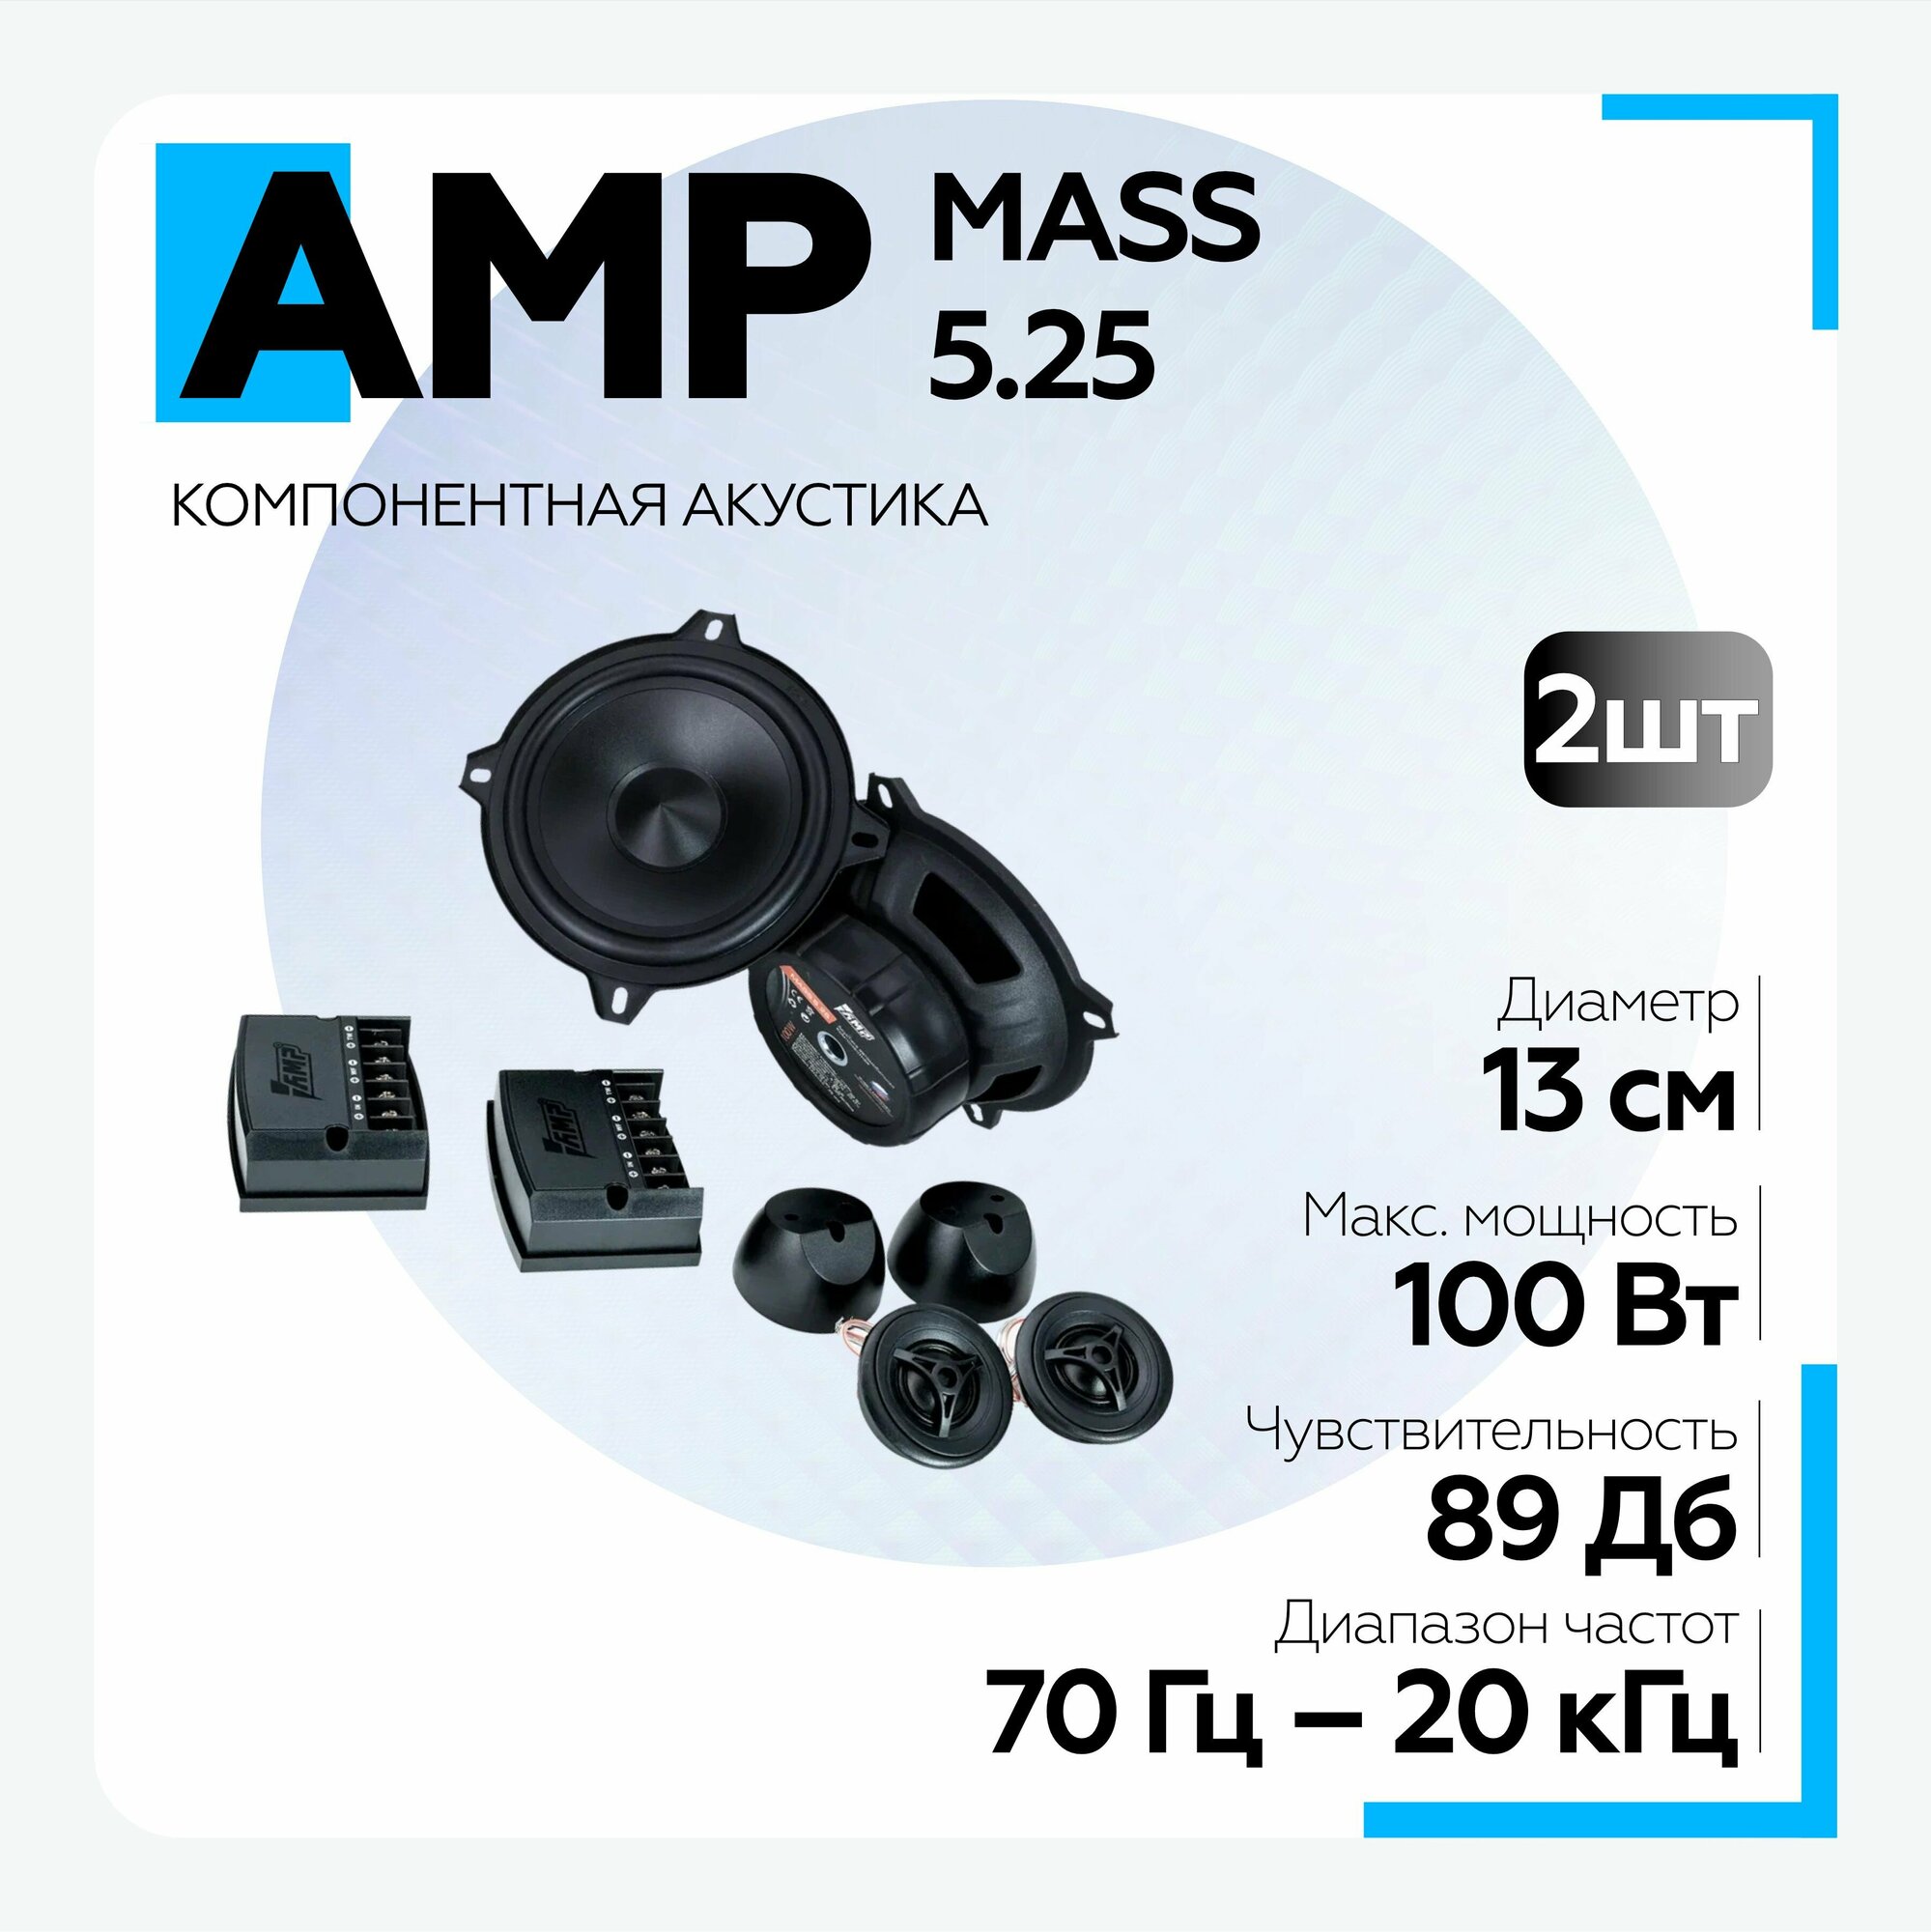 Автомобильная акустика AMP MASS 5.25 компонентная